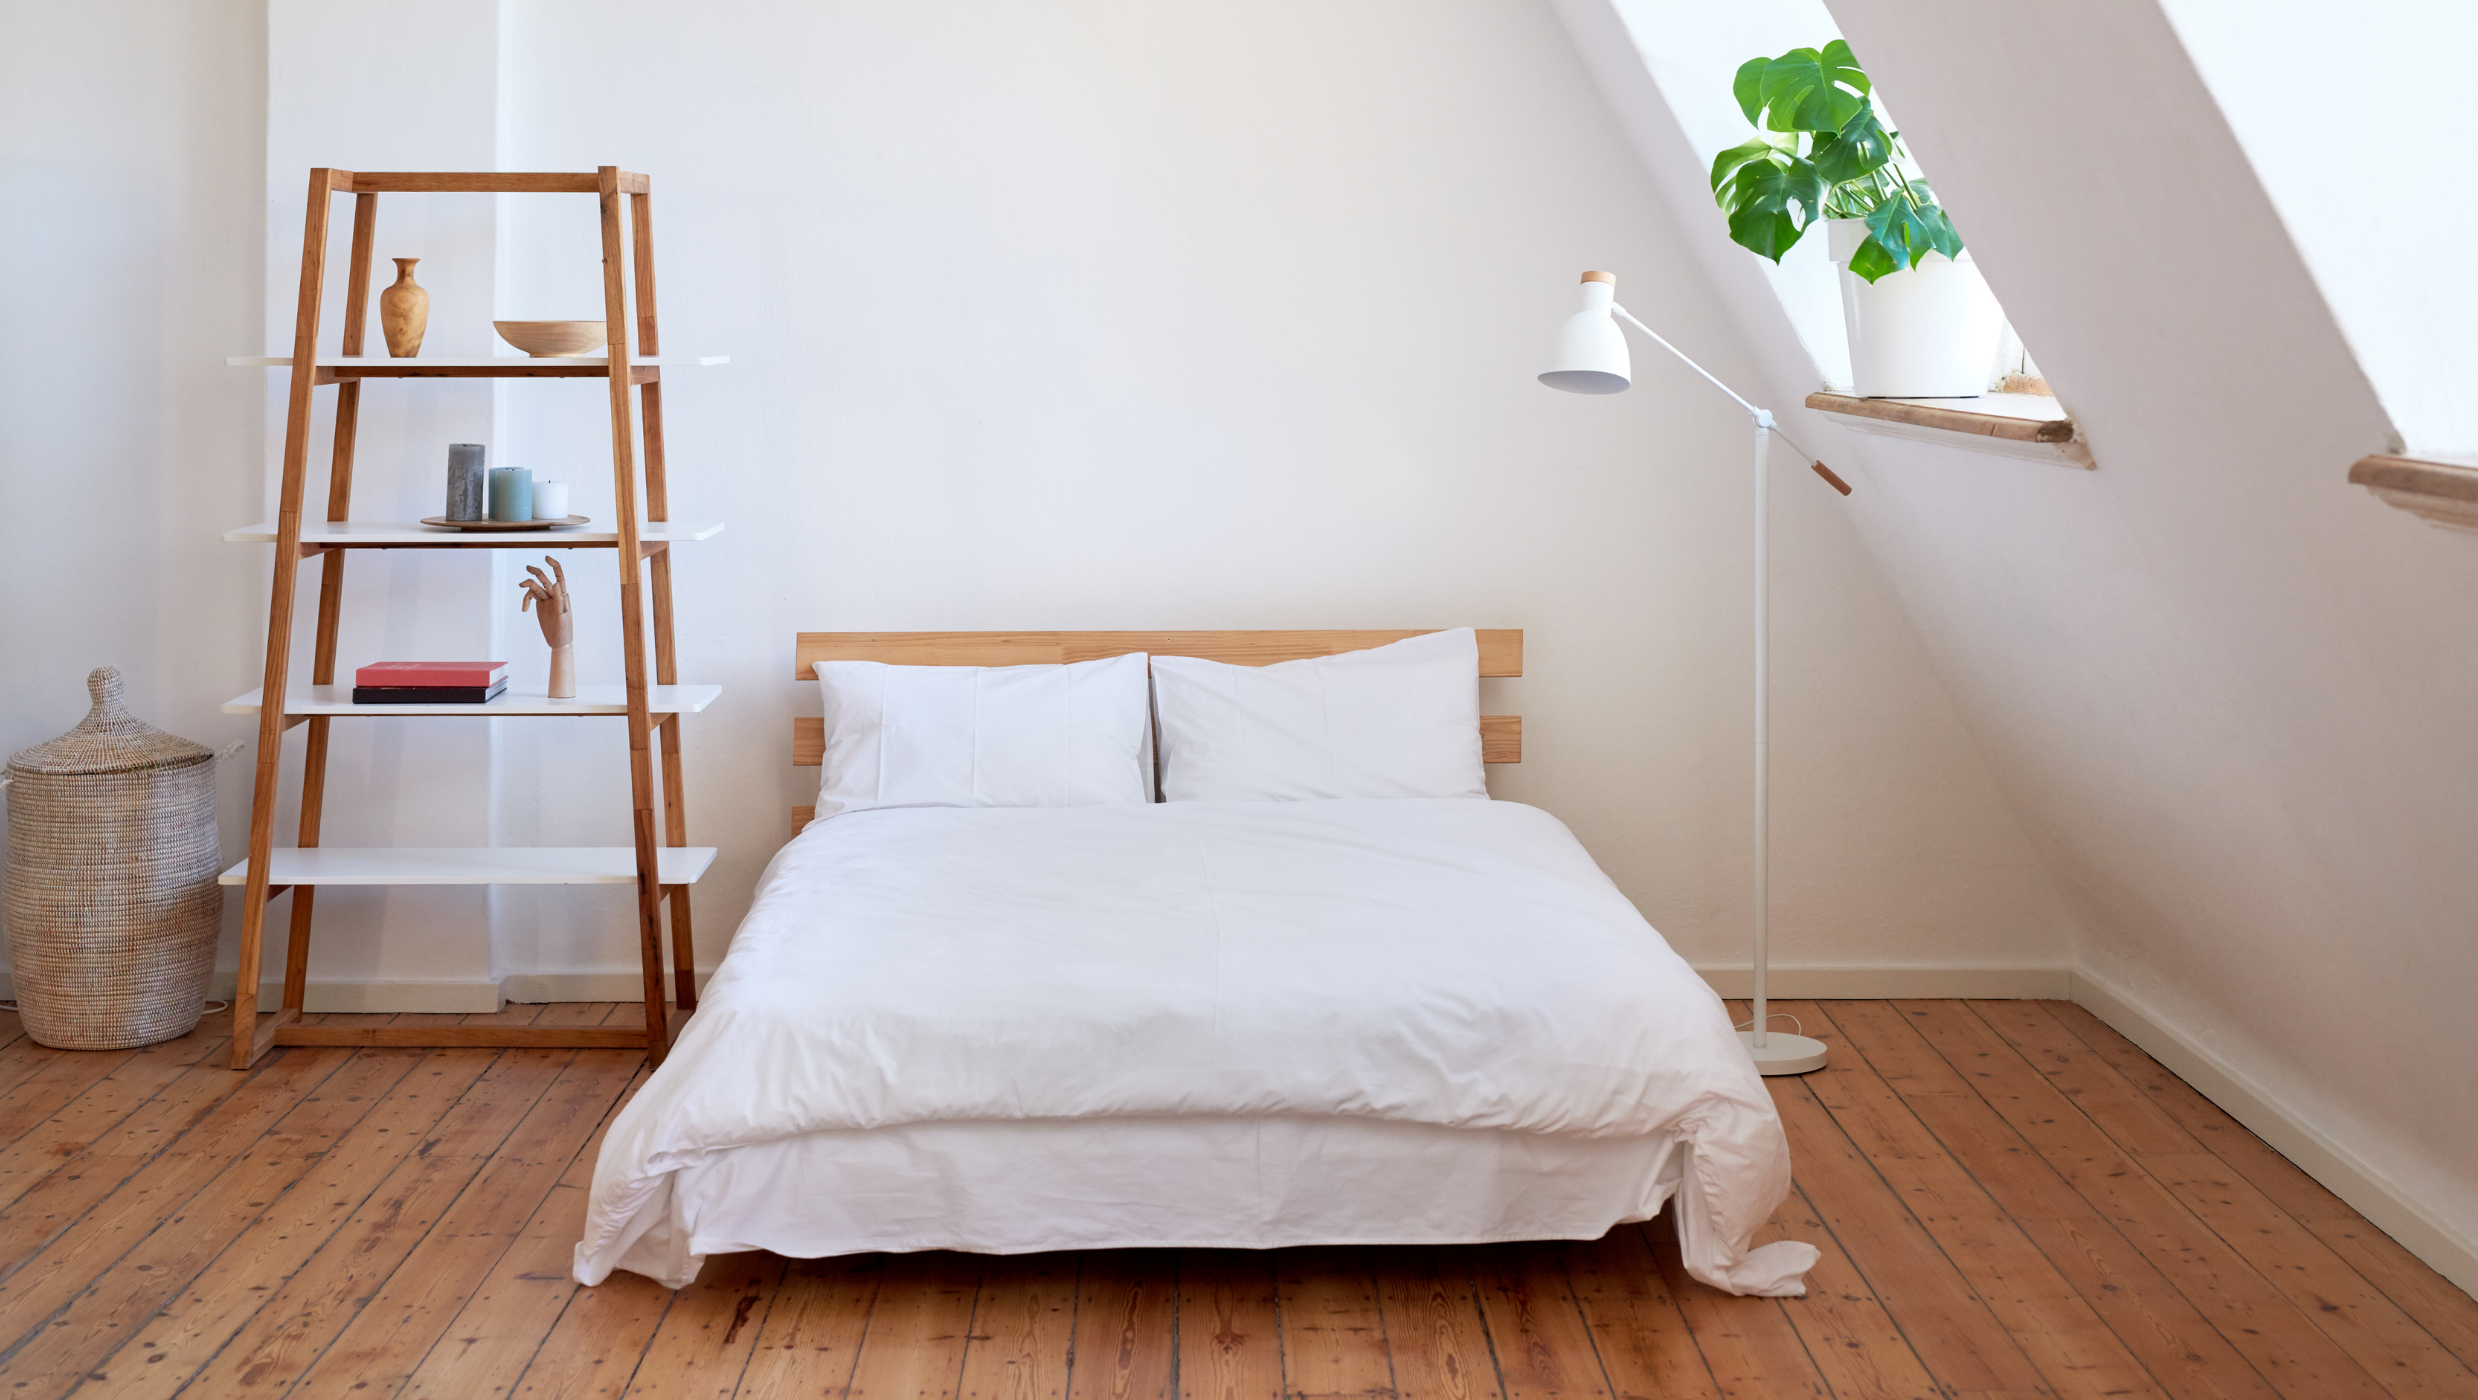 TikTok-trend: Lav egen seng ud af IKEA-reoler | Vi Unge